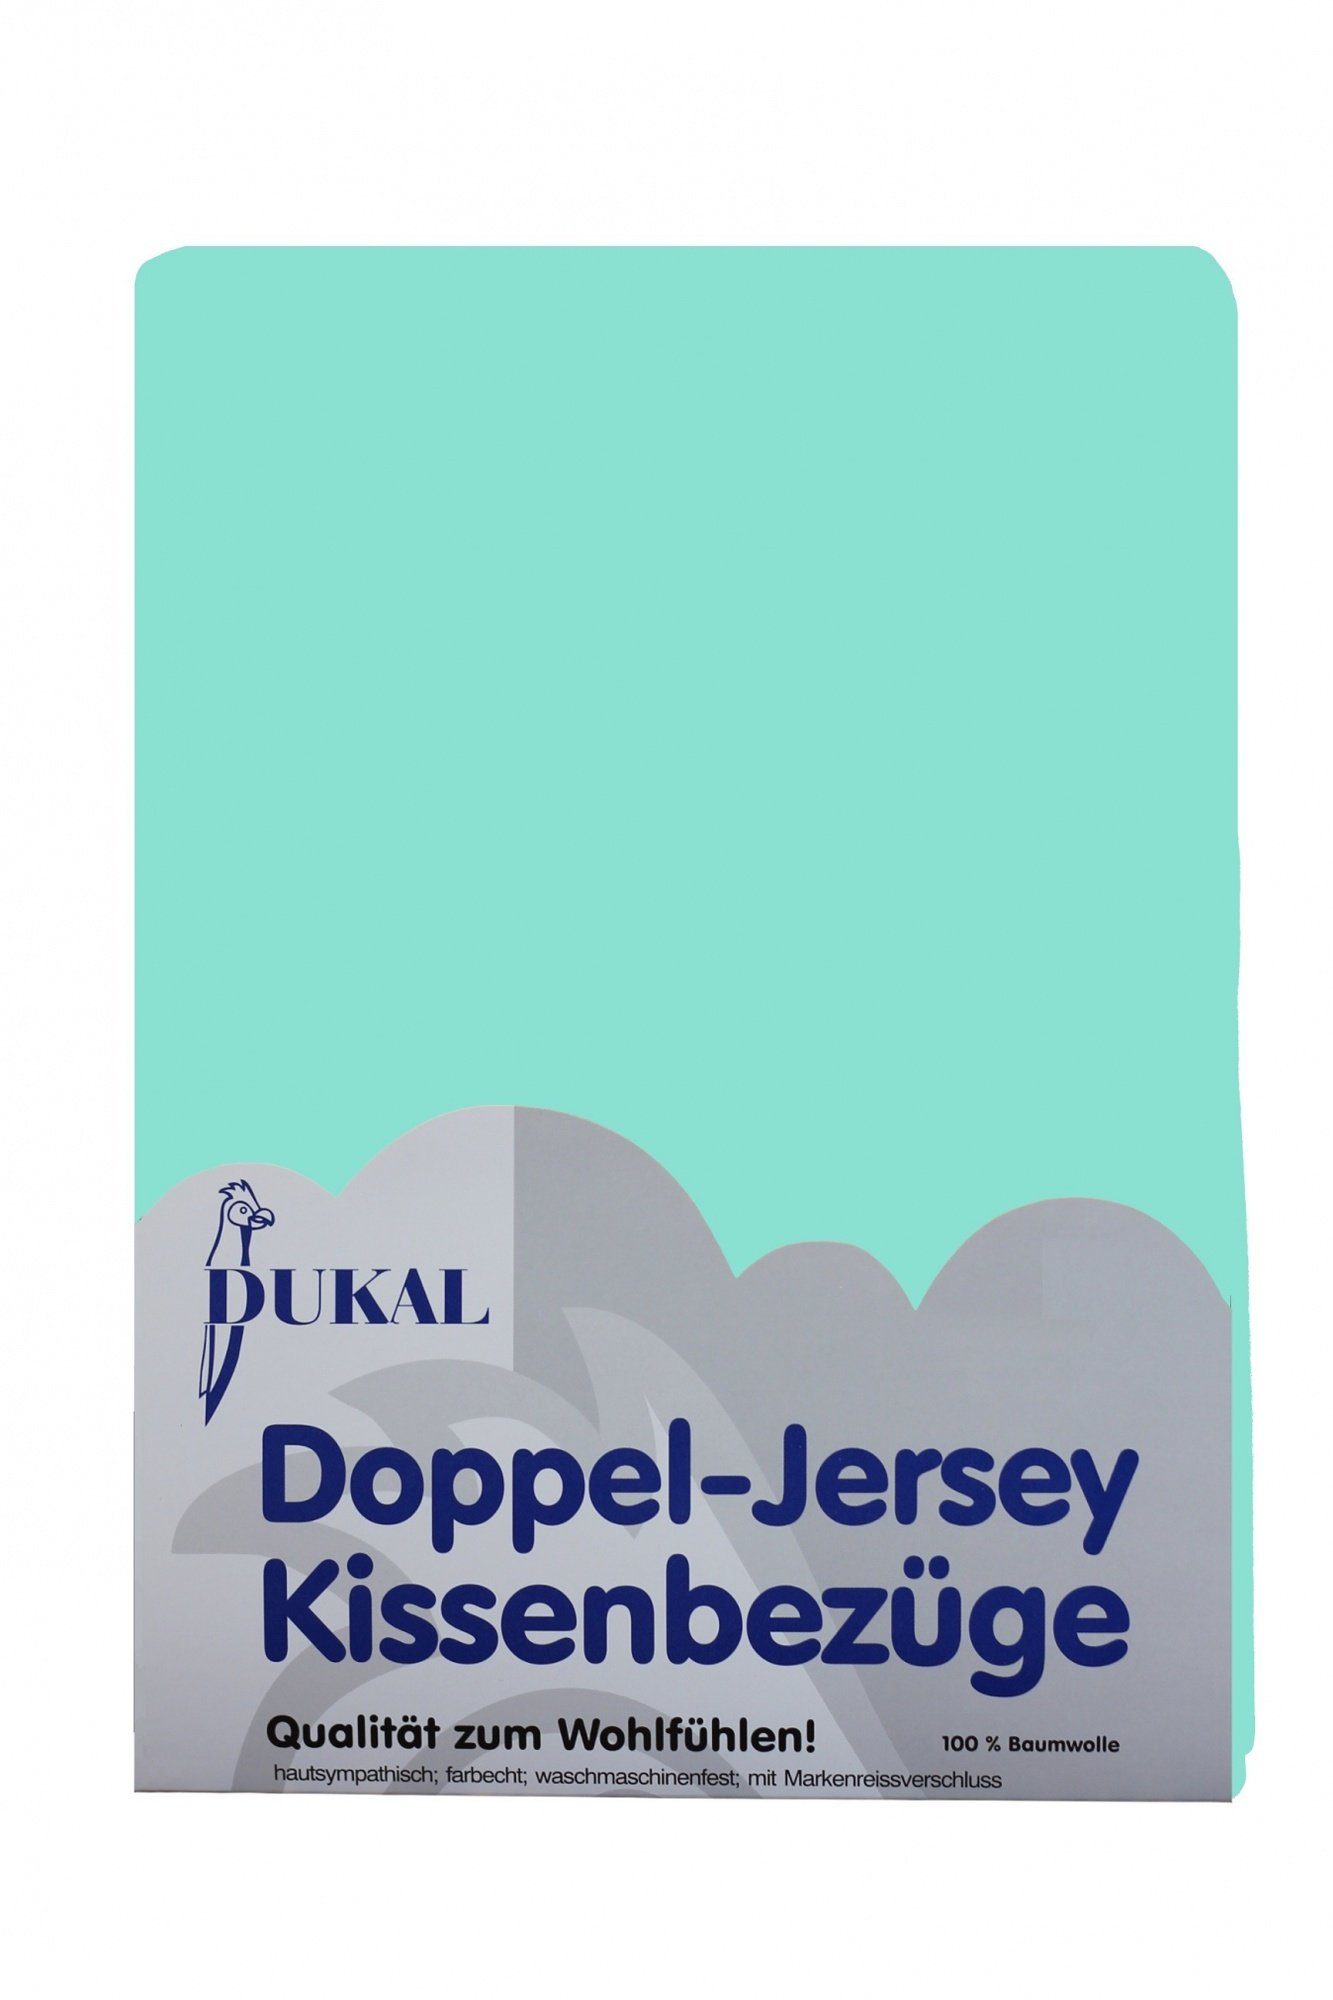 Kissenbezüge aus hochwertigem Doppel-Jersey, 100% Baumwolle, DUKAL (1 Stück), 40x40 cm, mit Reißverschluss, Made in Germany